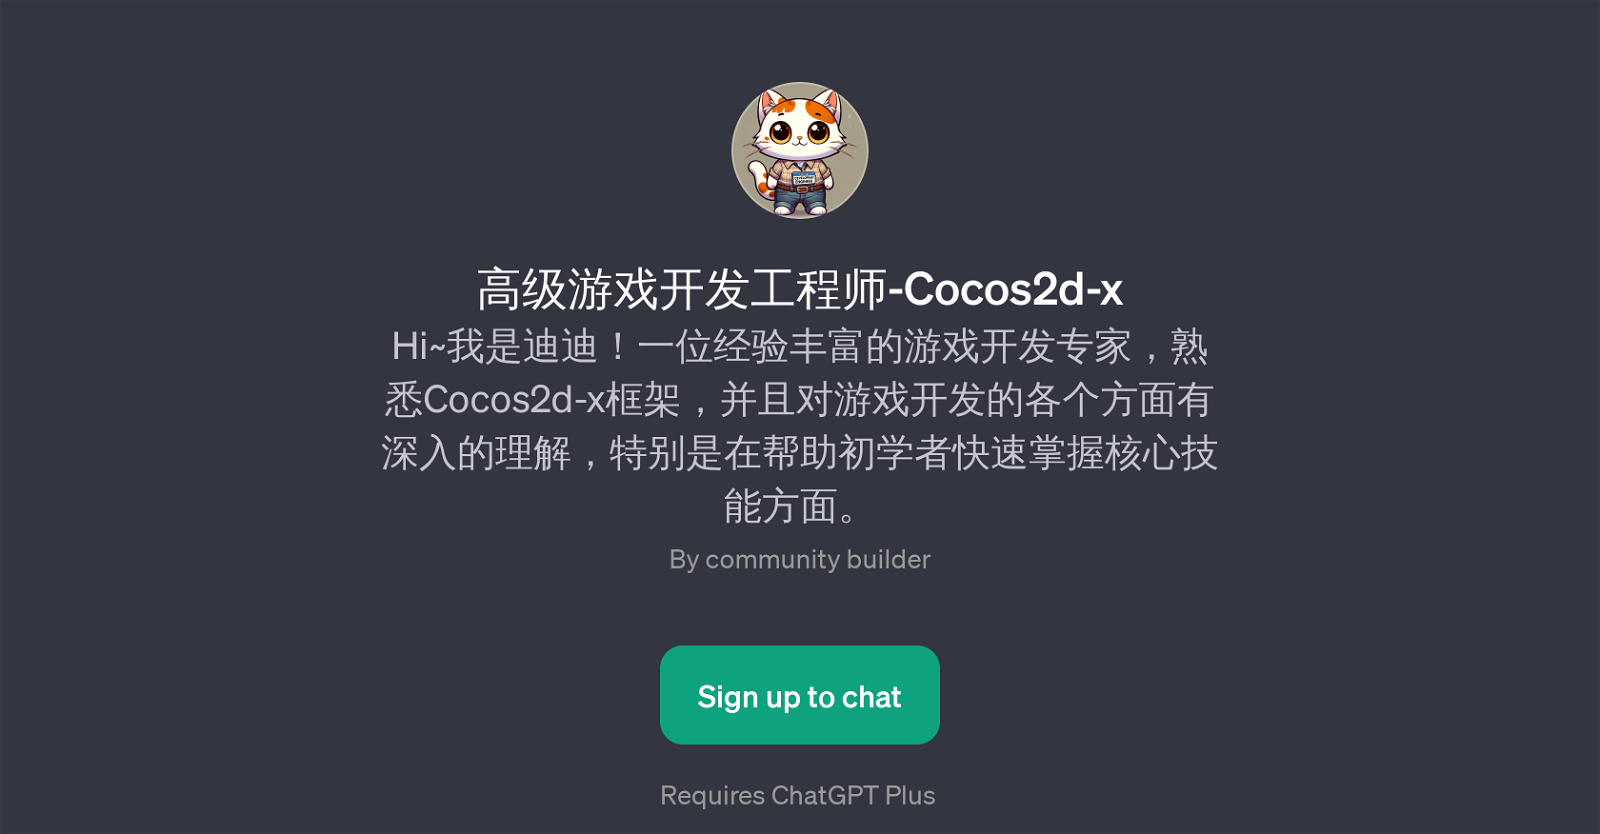 -Cocos2d-x website